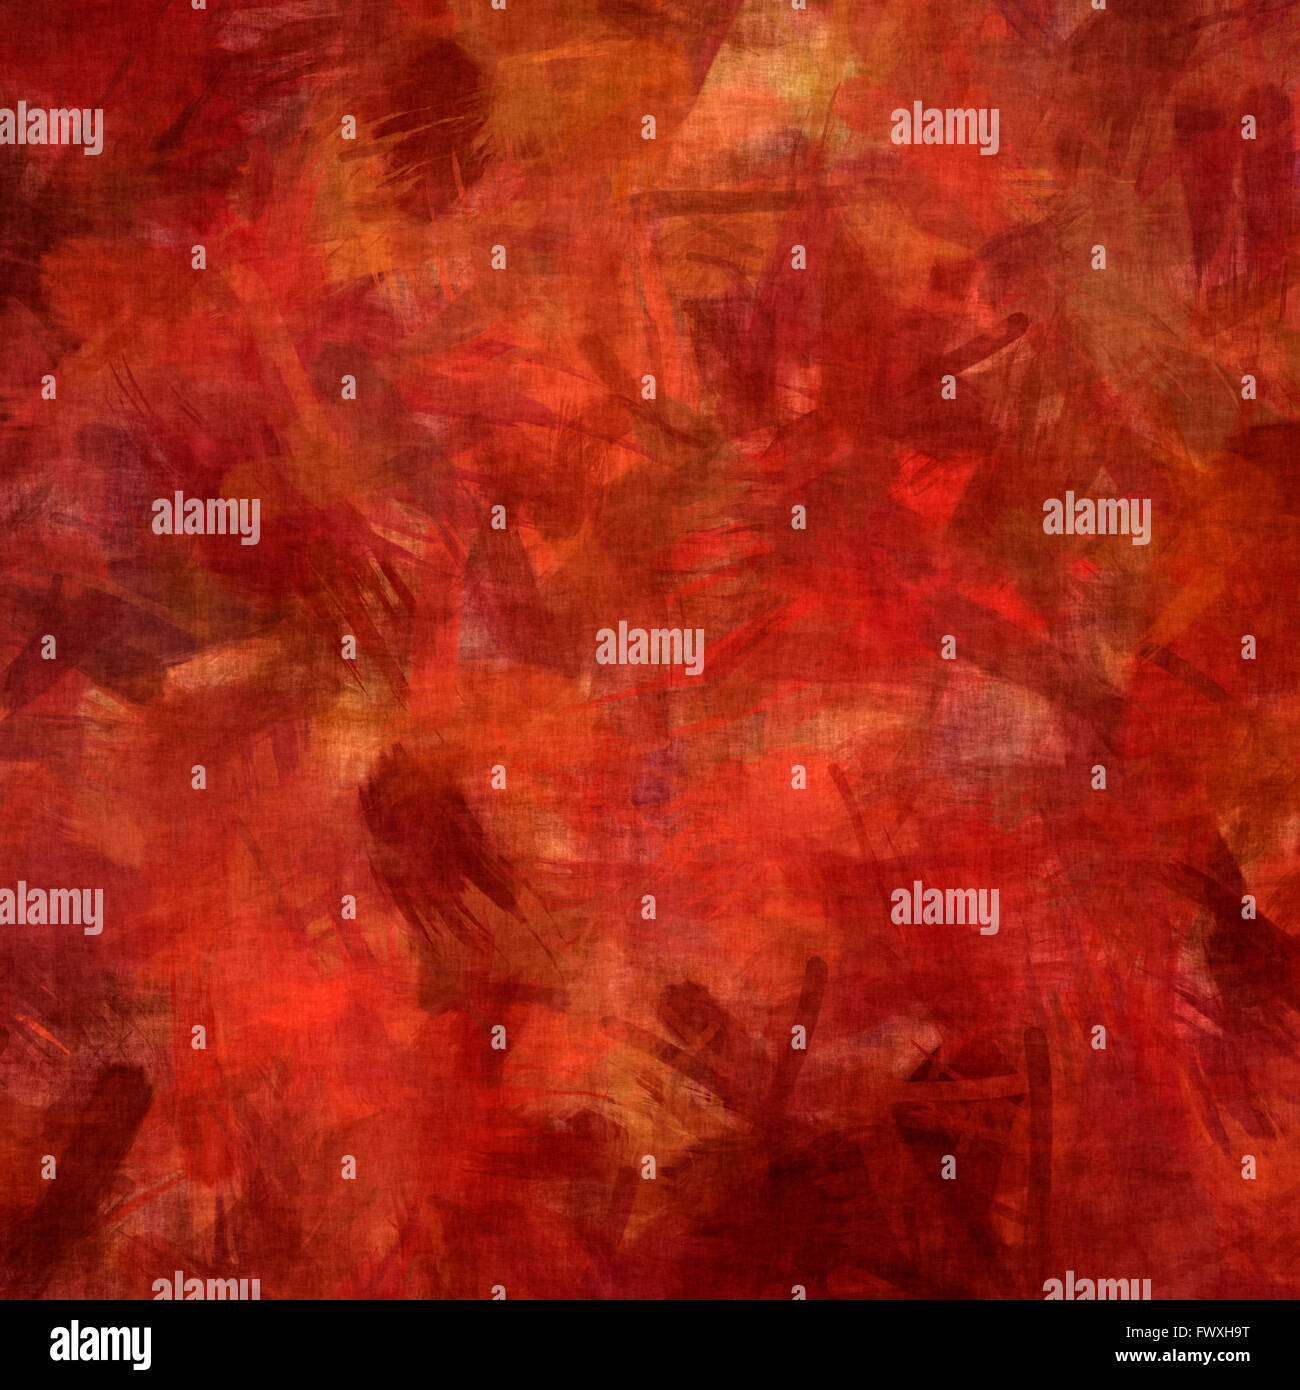 Abstract,pittorica in background i rossi e i toni di colore arancione. Foto Stock